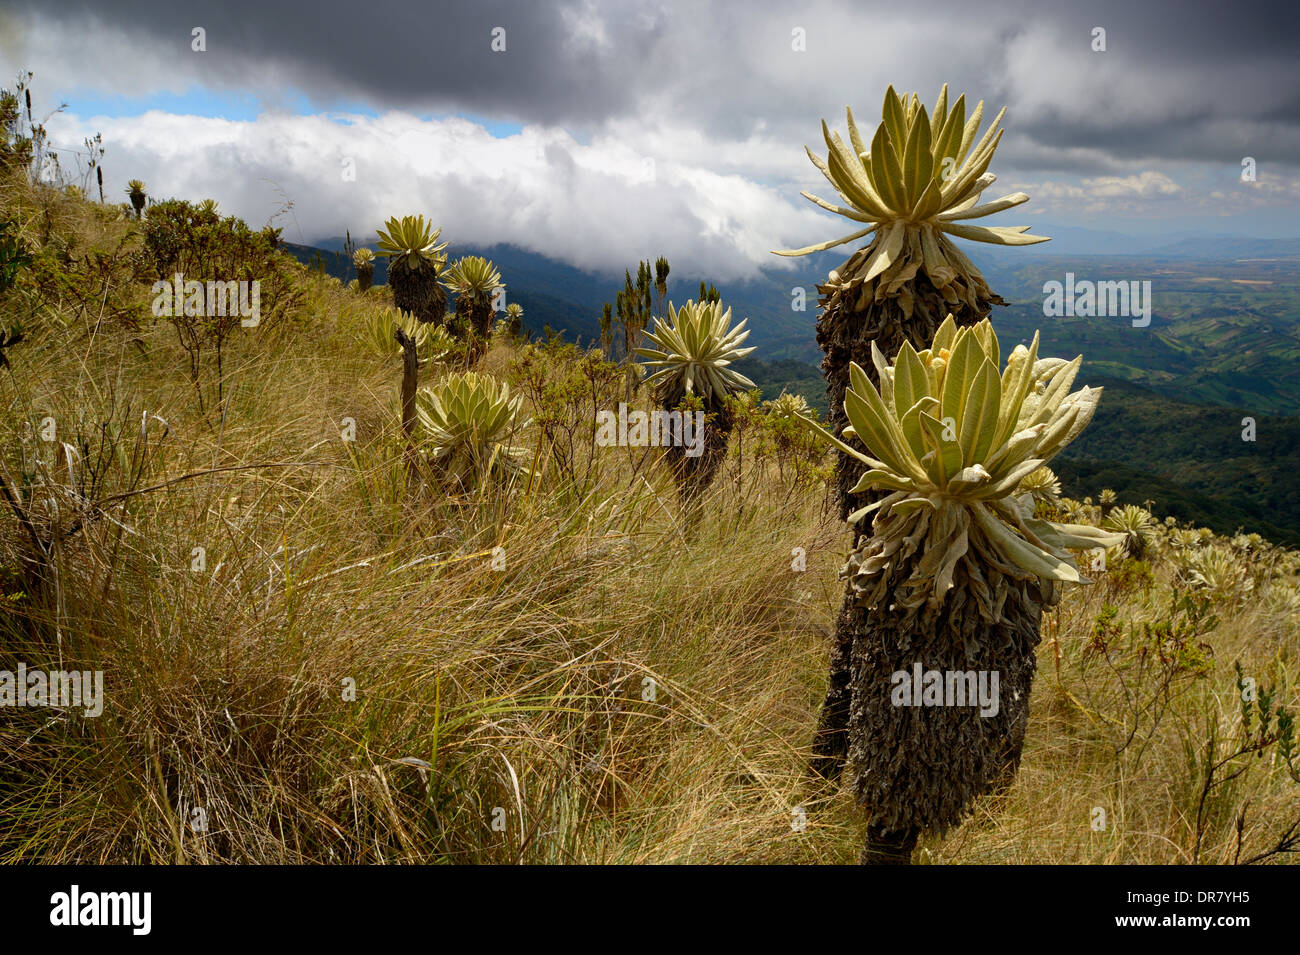 Frailejón or Fraylejón (Espeletia pycnophylla) plants in the páramo landscape, Guandera, Imbabura, Ecuador Stock Photo